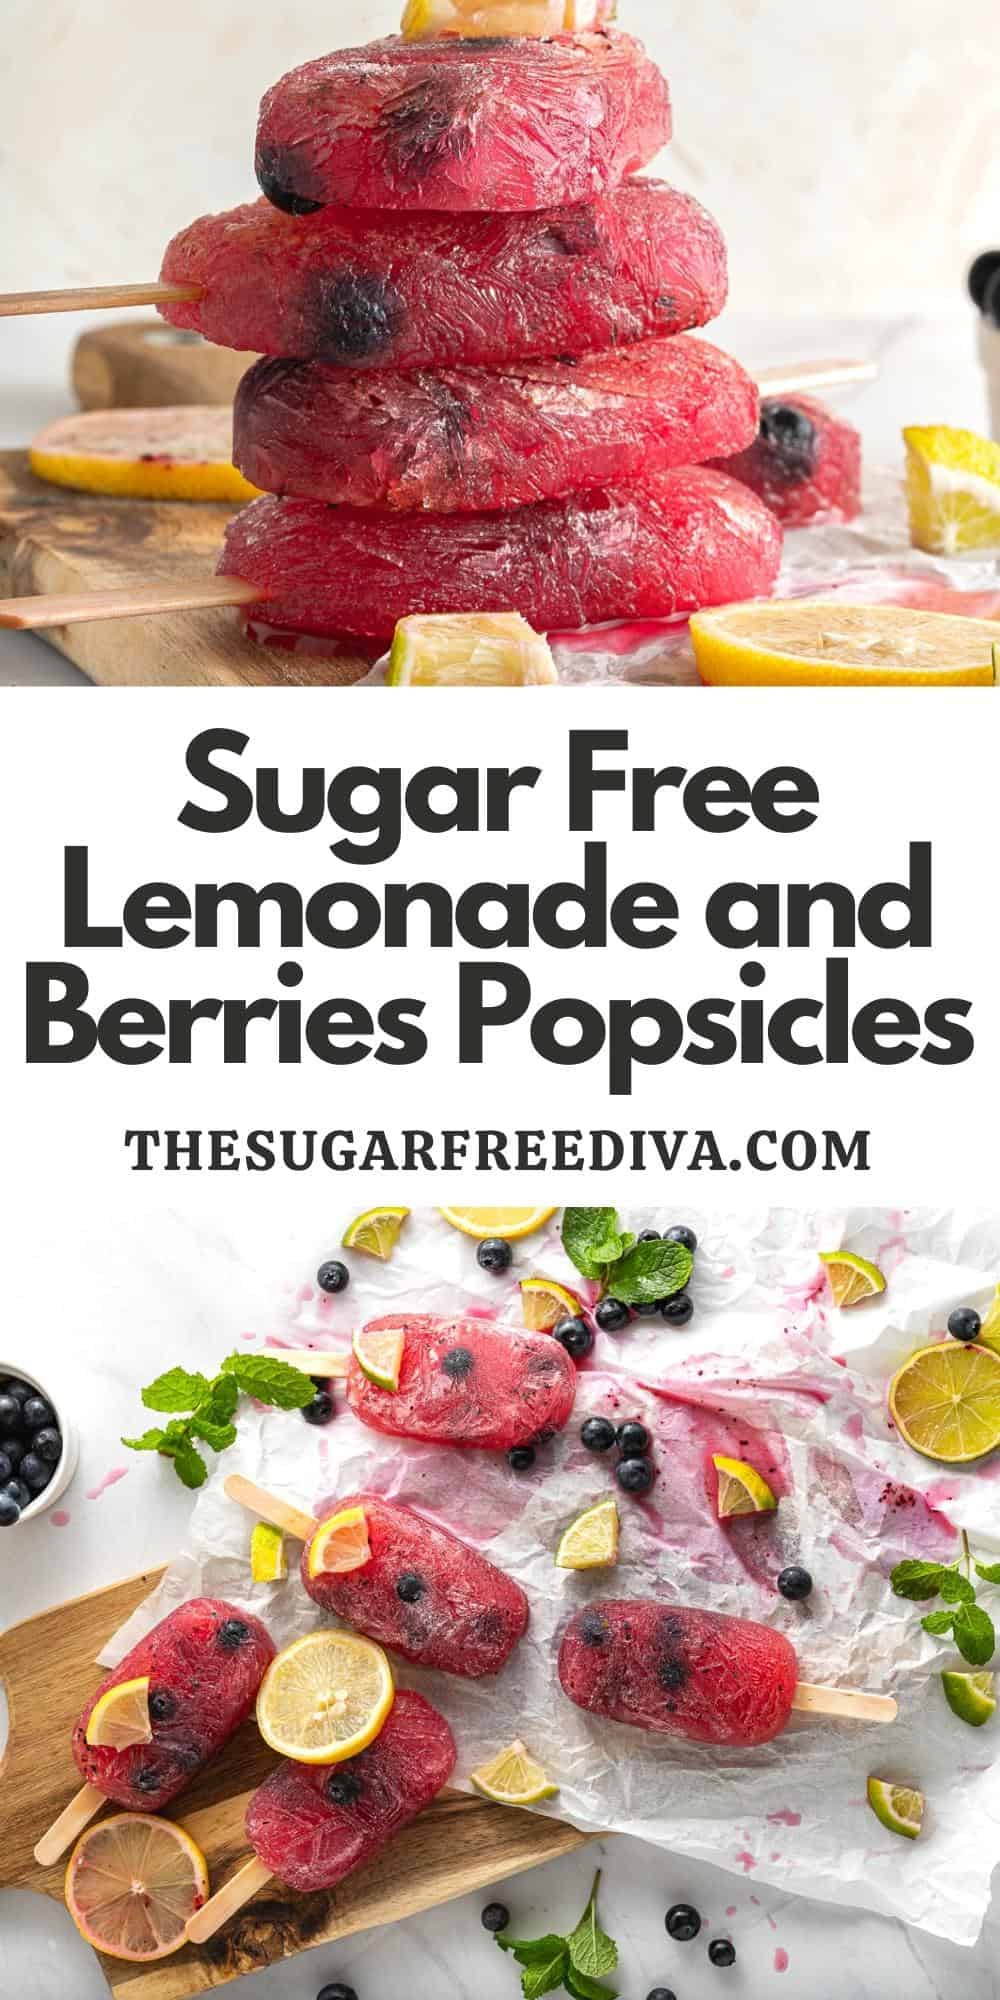 Sugar Free Lemonade and Berries Popsicles